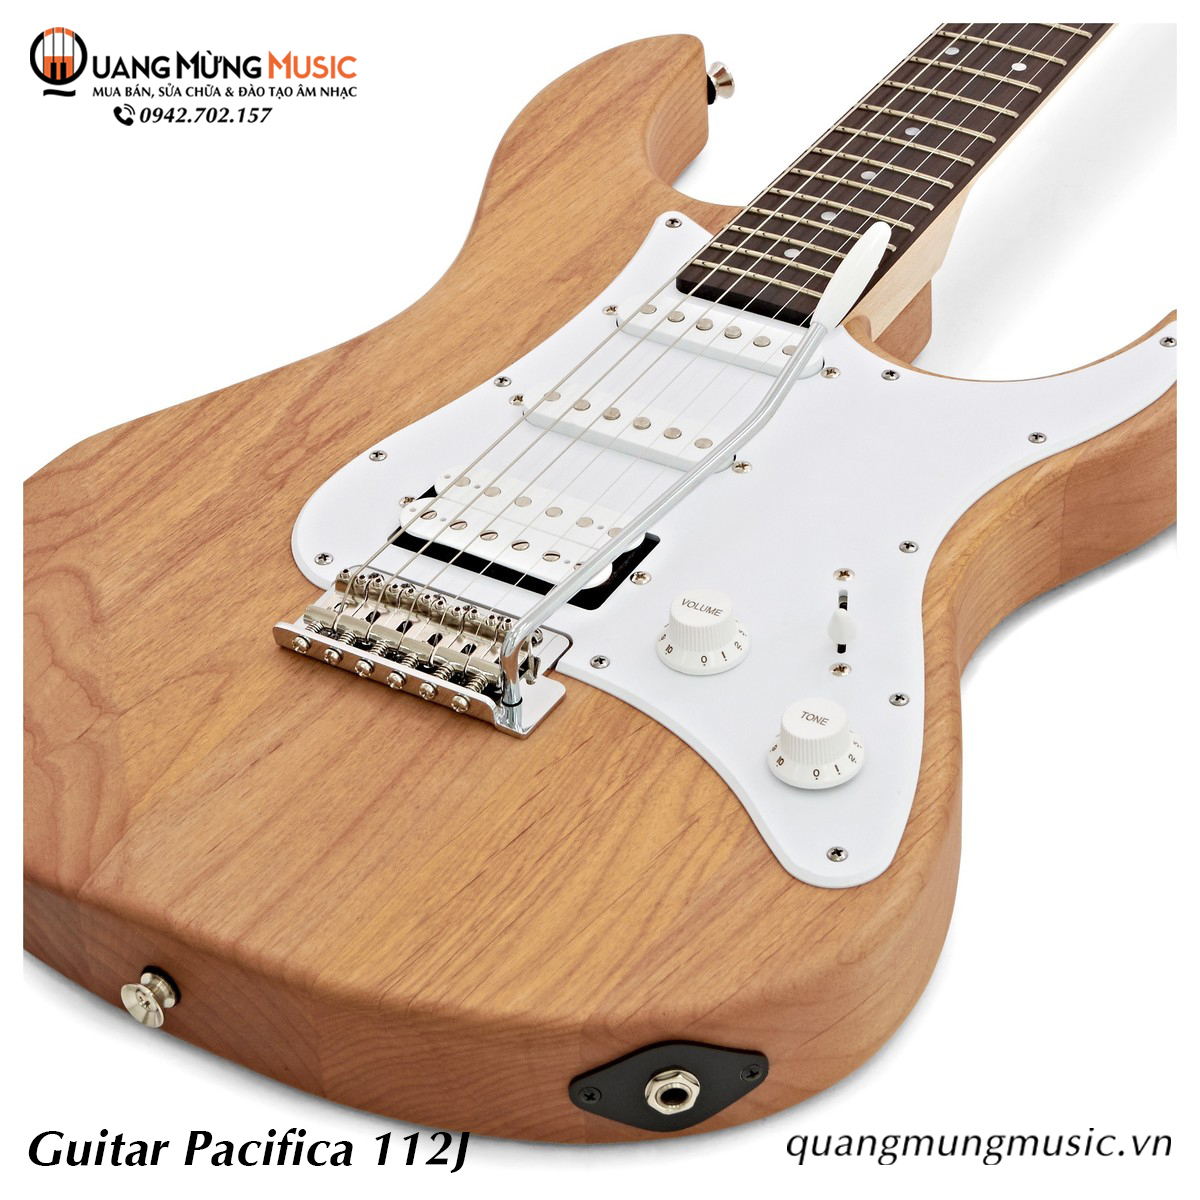 Guitar Điện Yamaha Pacifica 112J5